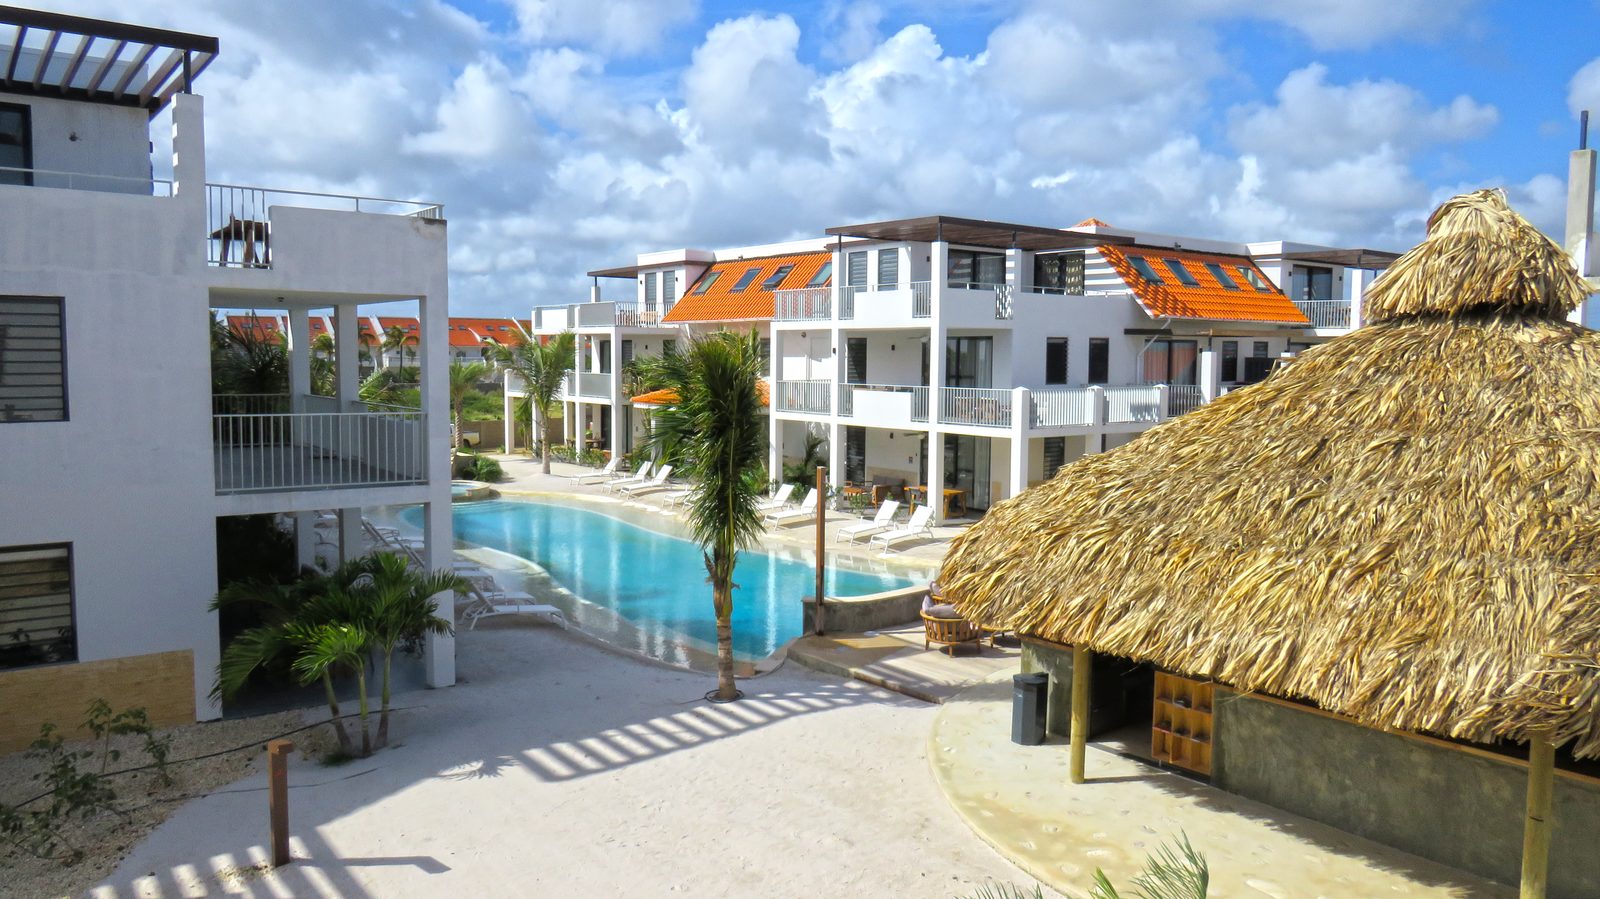 Sur l'île de Bonaire, vous pouvez rester au Resort Bonaire. Appartements luxueux au confort maximum pour votre plus grand plaisir. Regardez la liste de nos logements disponibles !